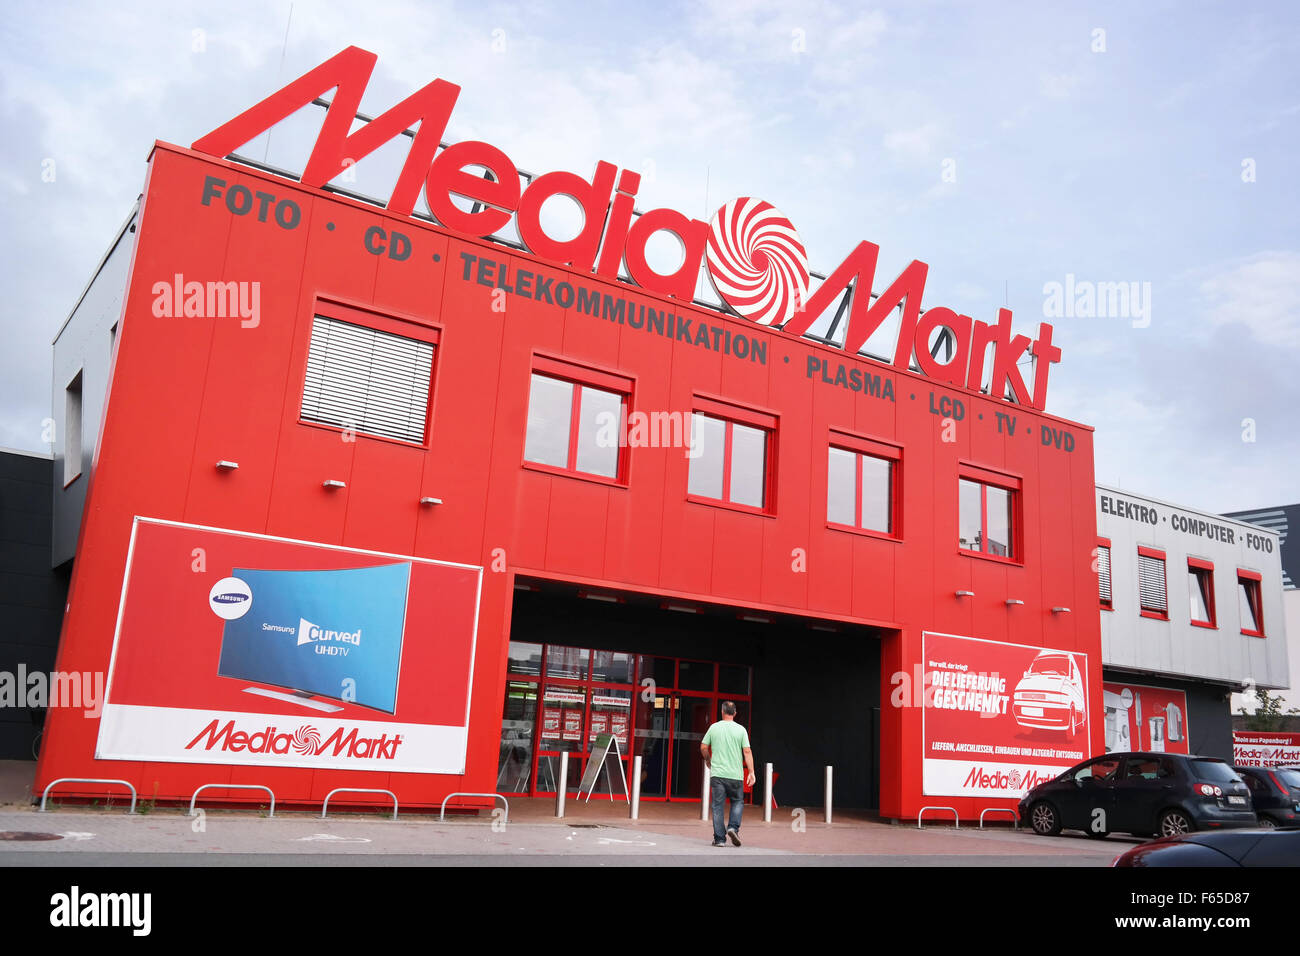 Oude tijden Word gek Wat dan ook Striking red Media Markt store with logo on top in Germany Stock Photo -  Alamy